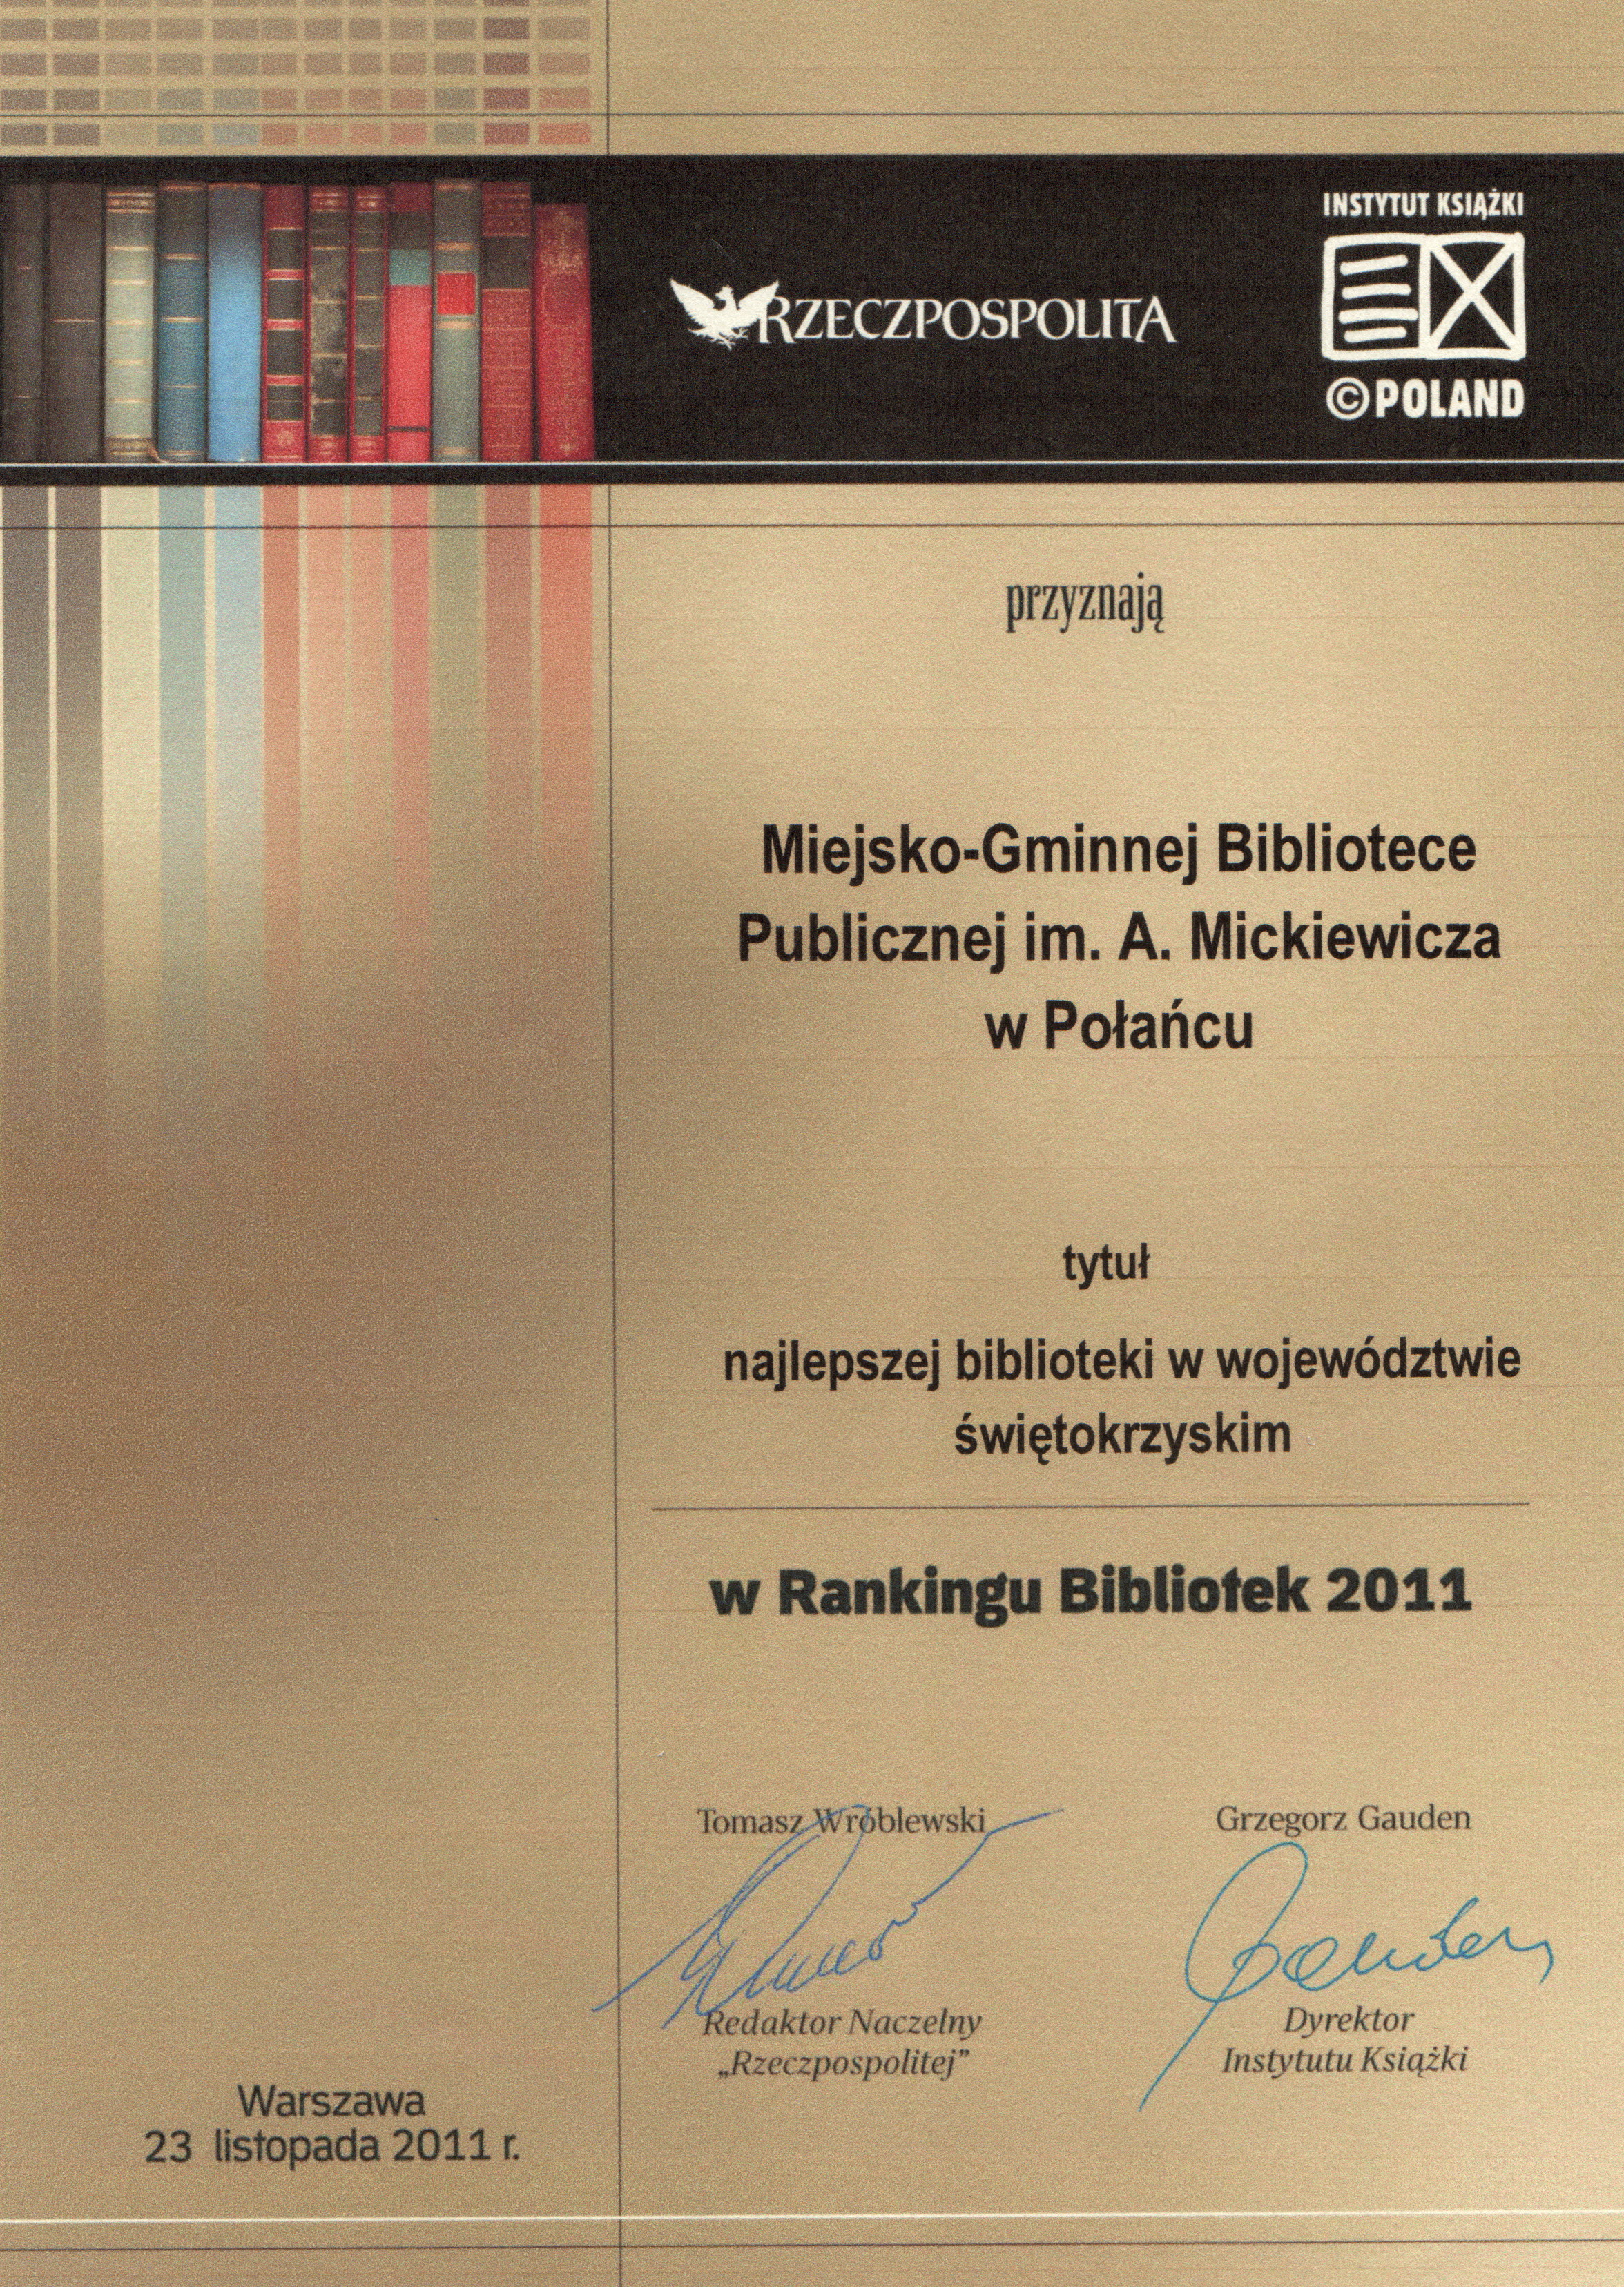 Najlepsza biblioteka województwa świętokrzyskeigo 2011